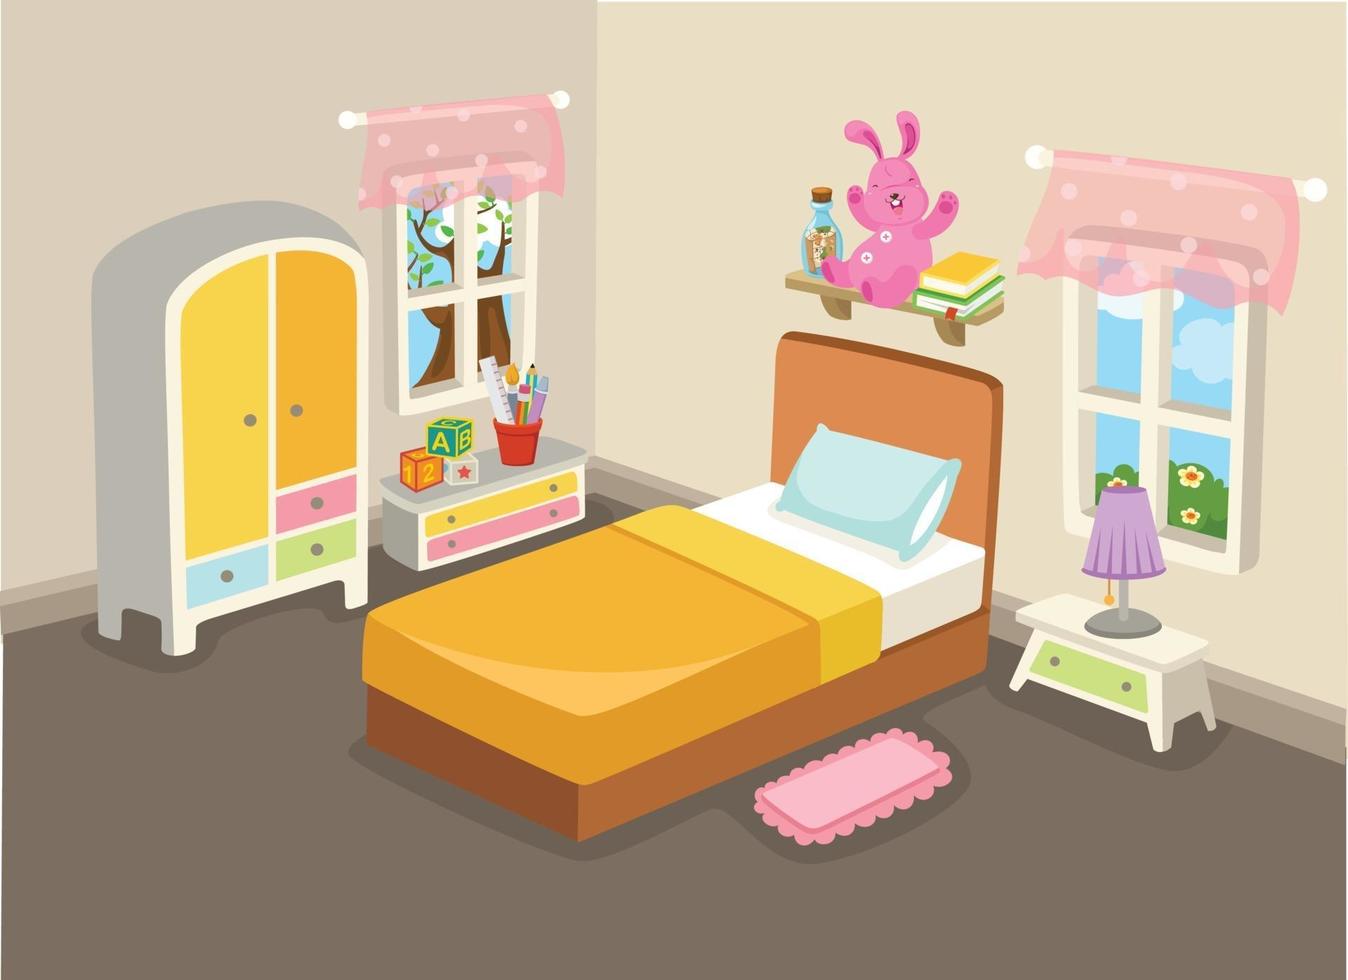 ilustração vetorial do interior de um quarto com um vetor de cama